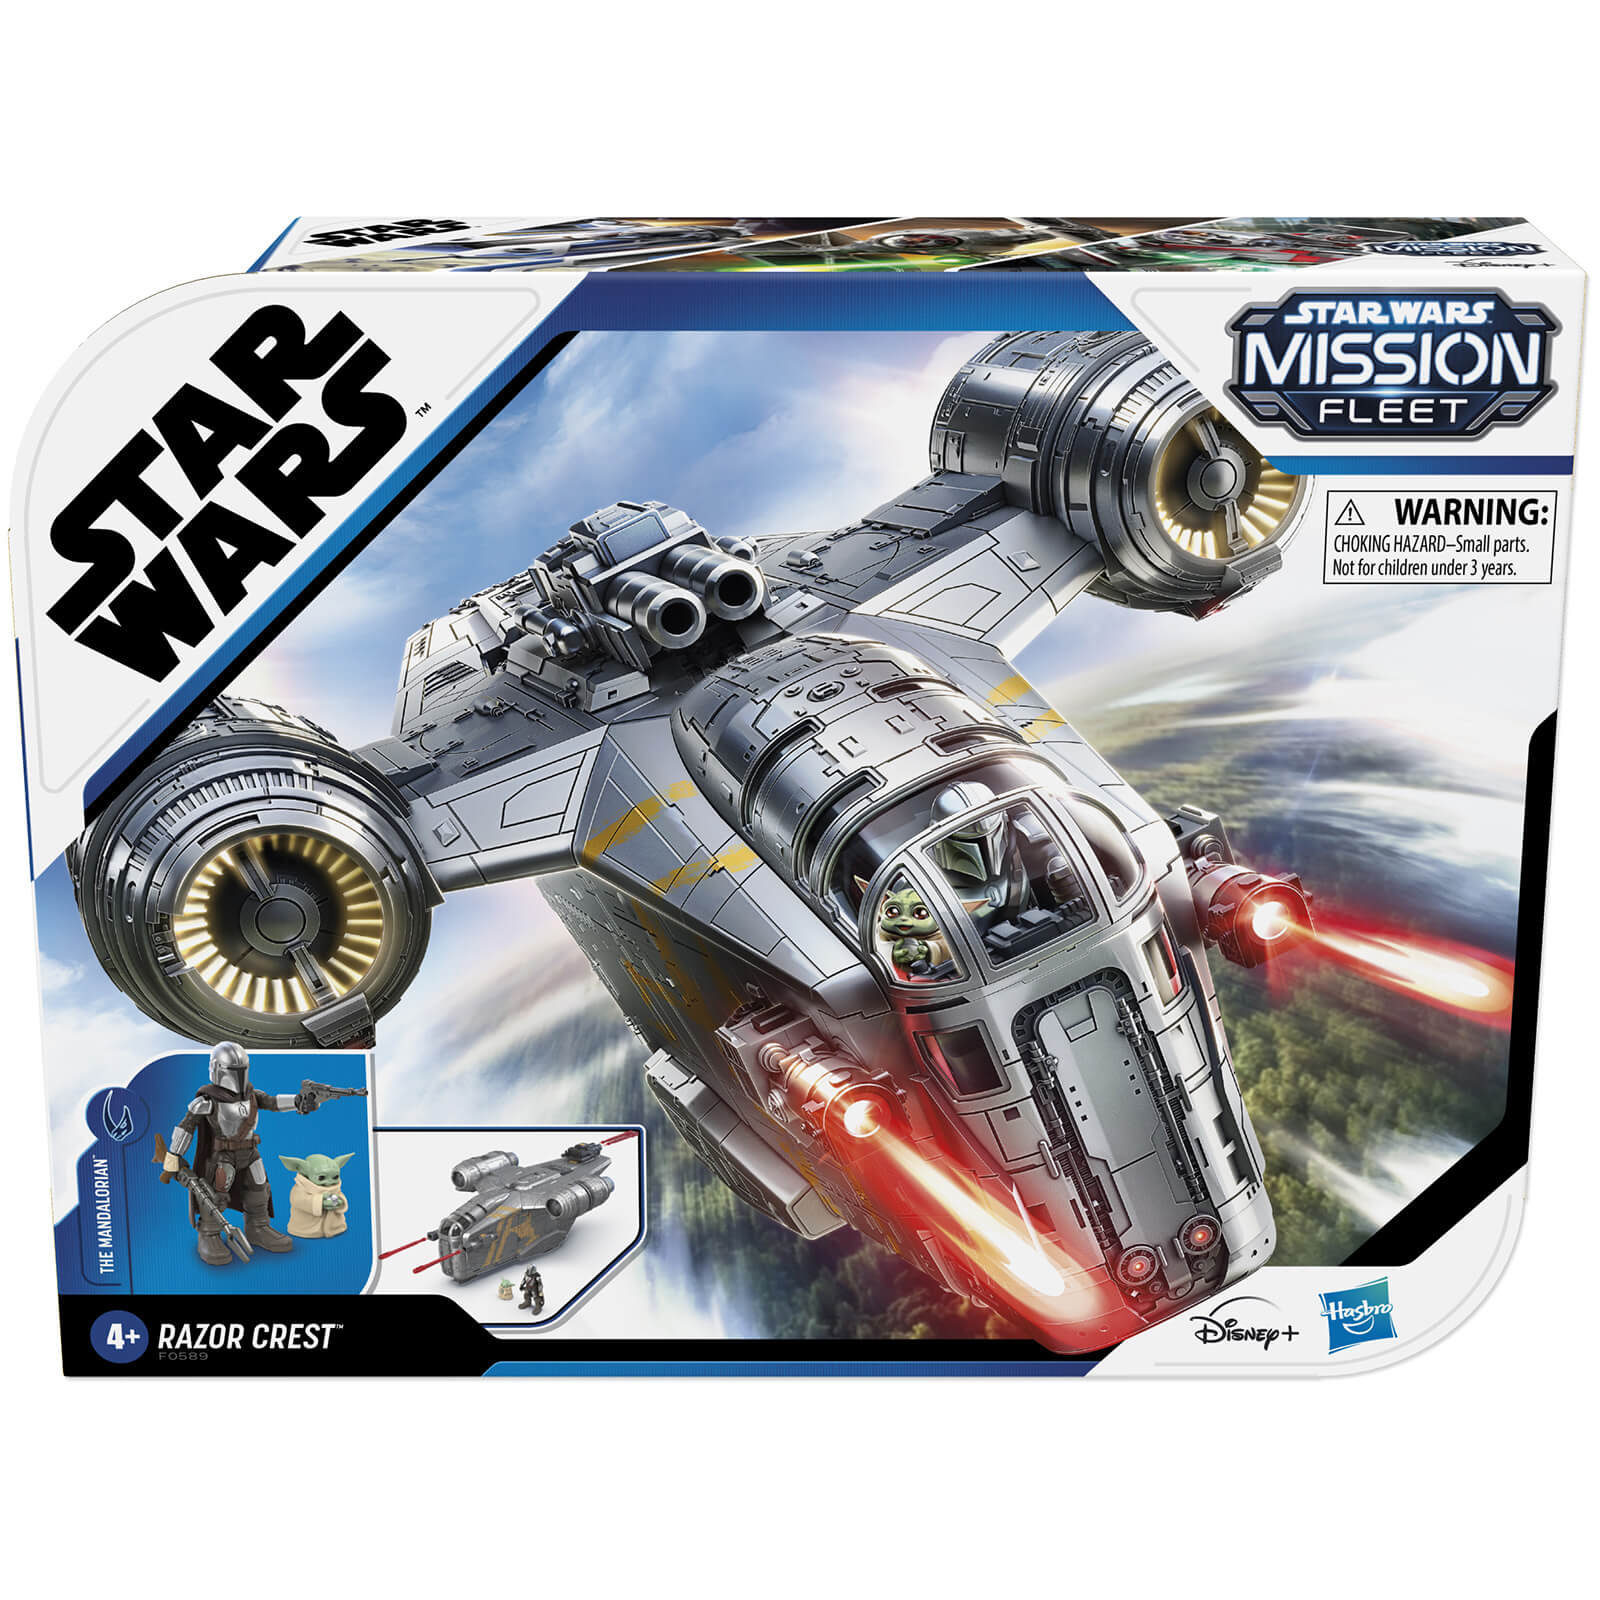 Hasbro Star Wars Mission Fleet Deluxe Sundae Playset